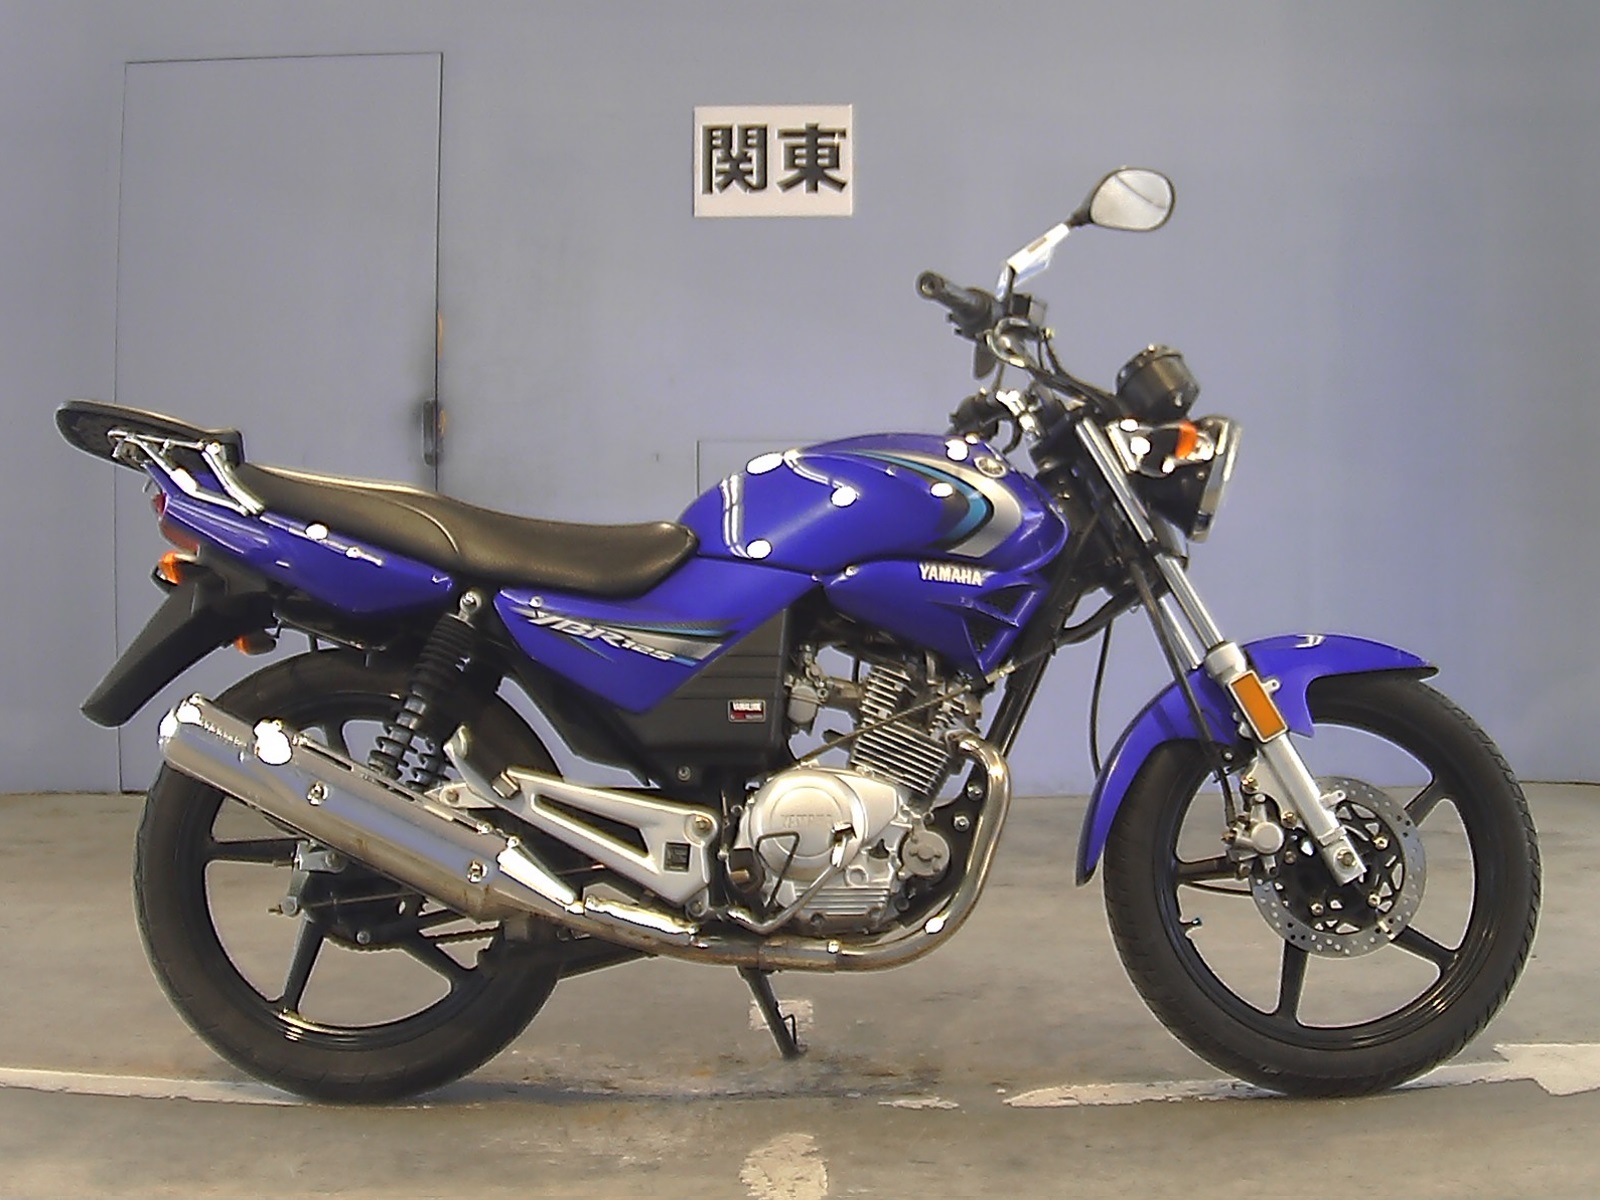 Yamaha YBR (Ямаха ЮБР) 125 — обзор